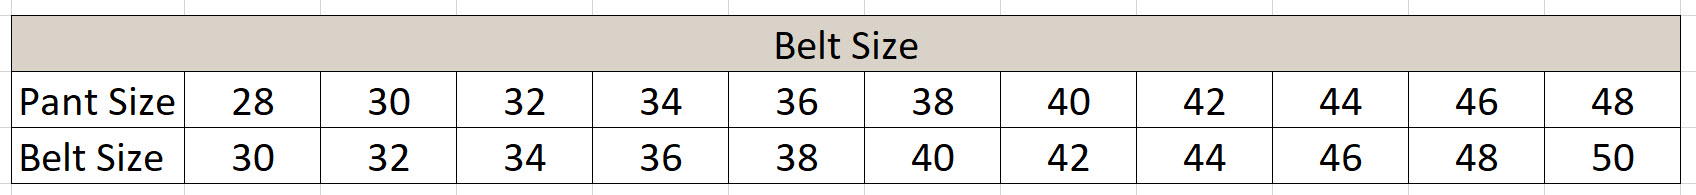 Belt_Size_Scale.jpg